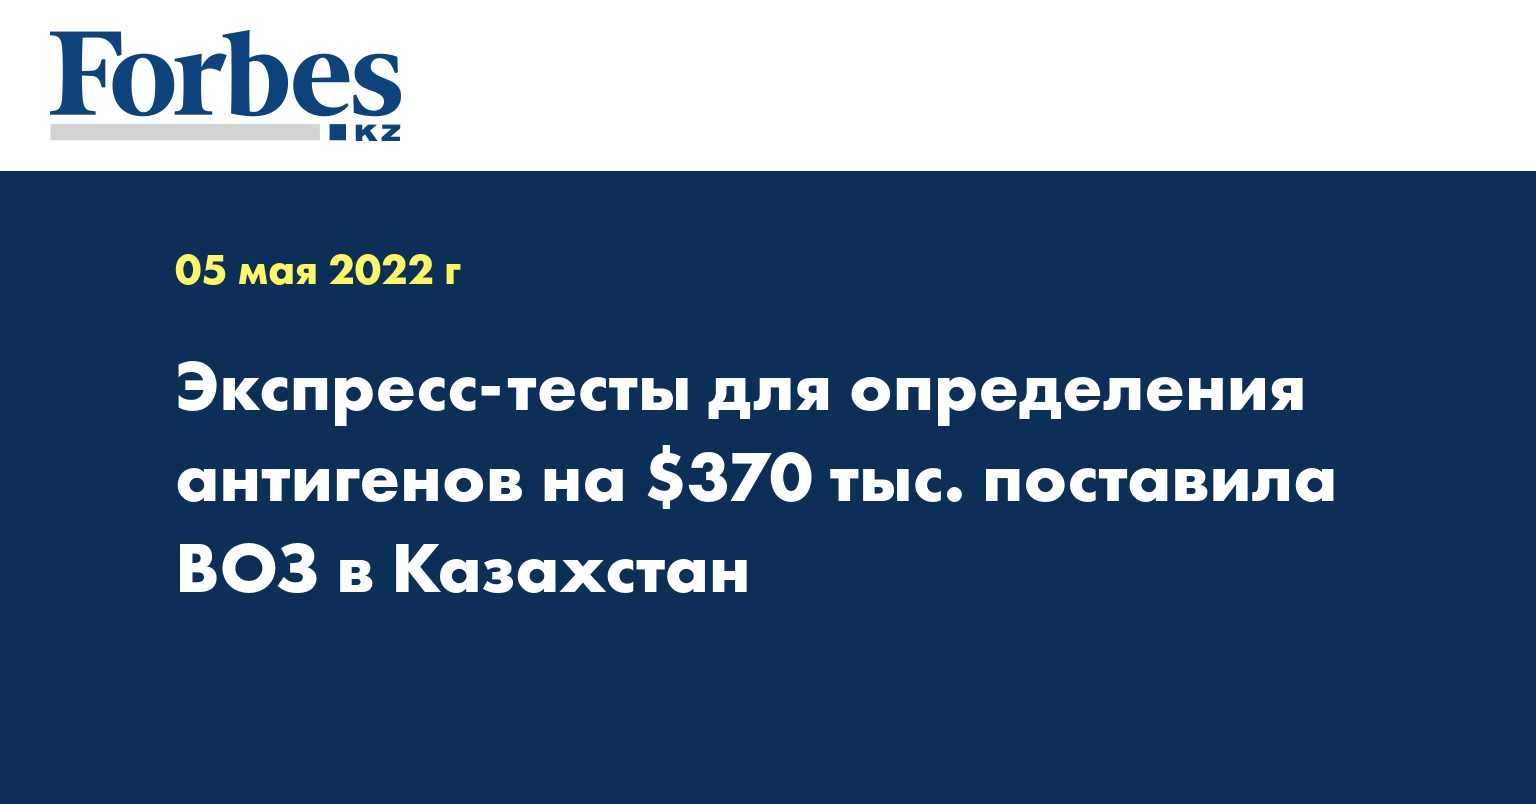  Экспресс-тесты для определения антигенов на $370 тыс. поставила ВОЗ в Казахстан